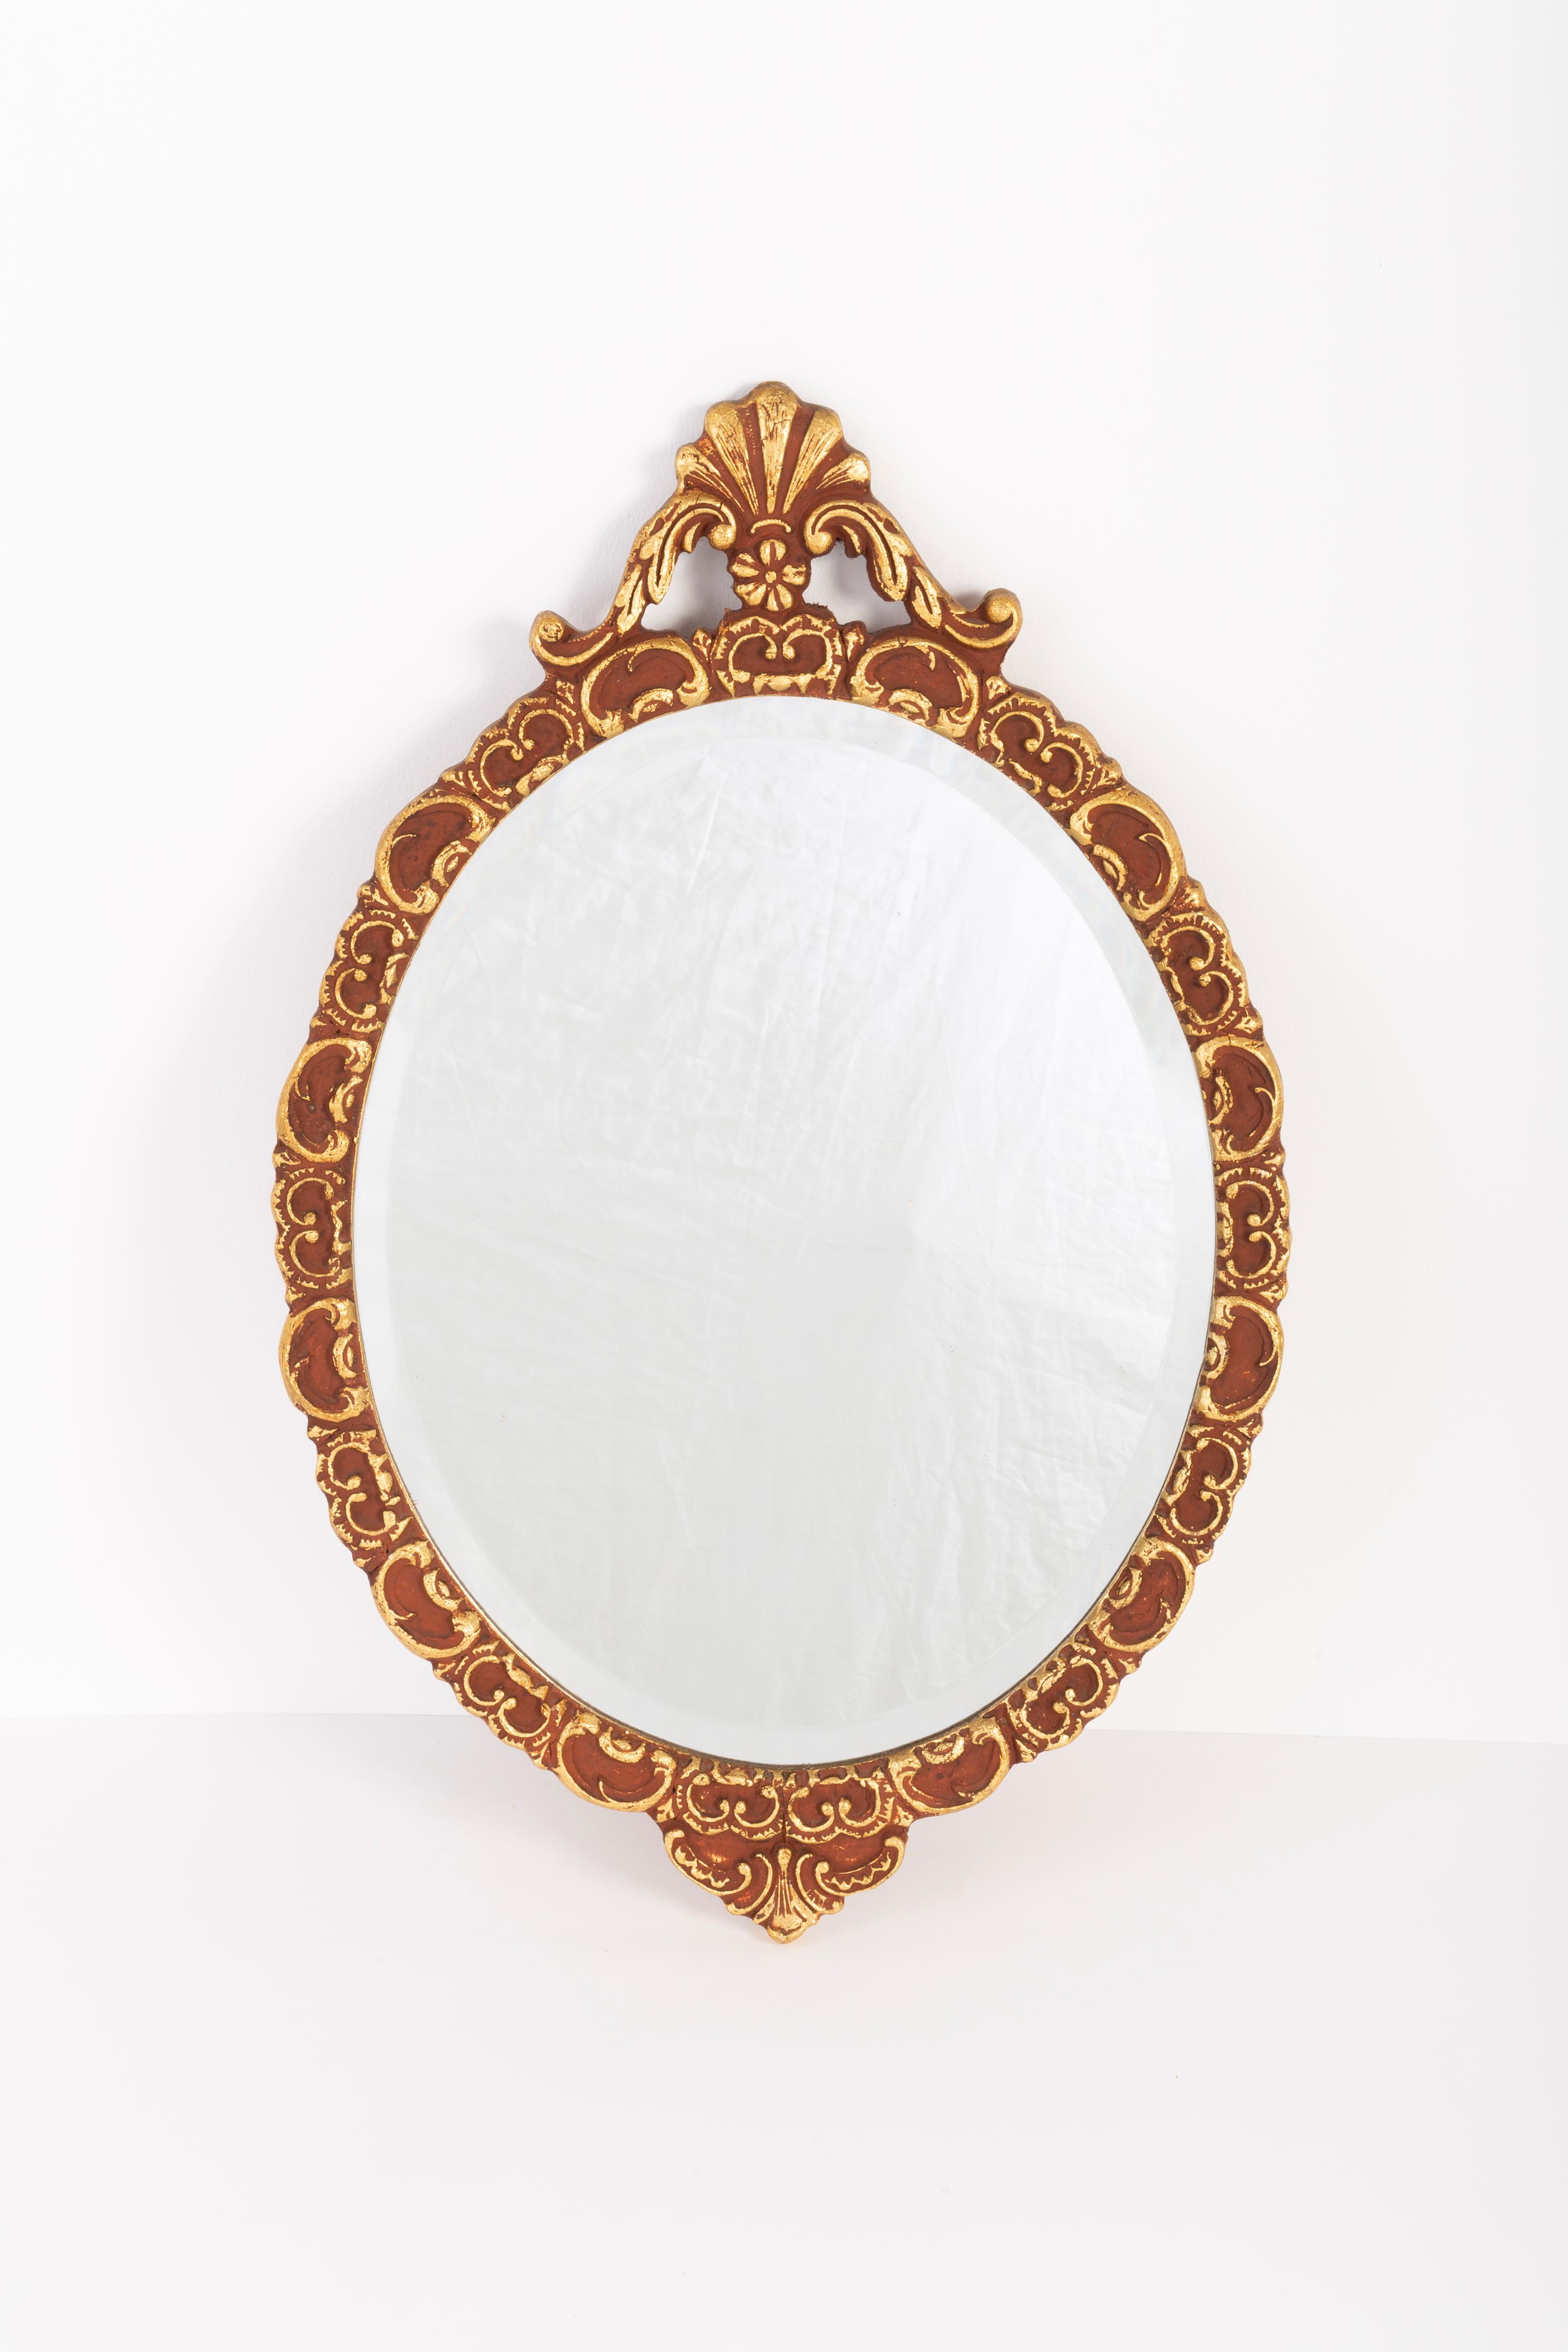 Ein Spiegel in einem goldenen Zierrahmen aus Italien. Der Rahmen ist aus Holz gefertigt. Spiegel ist in sehr gutem Vintage-Zustand, keine Schäden oder Risse im Rahmen. Ein schönes Stück für jedes Interieur! Nur ein einziges Stück.